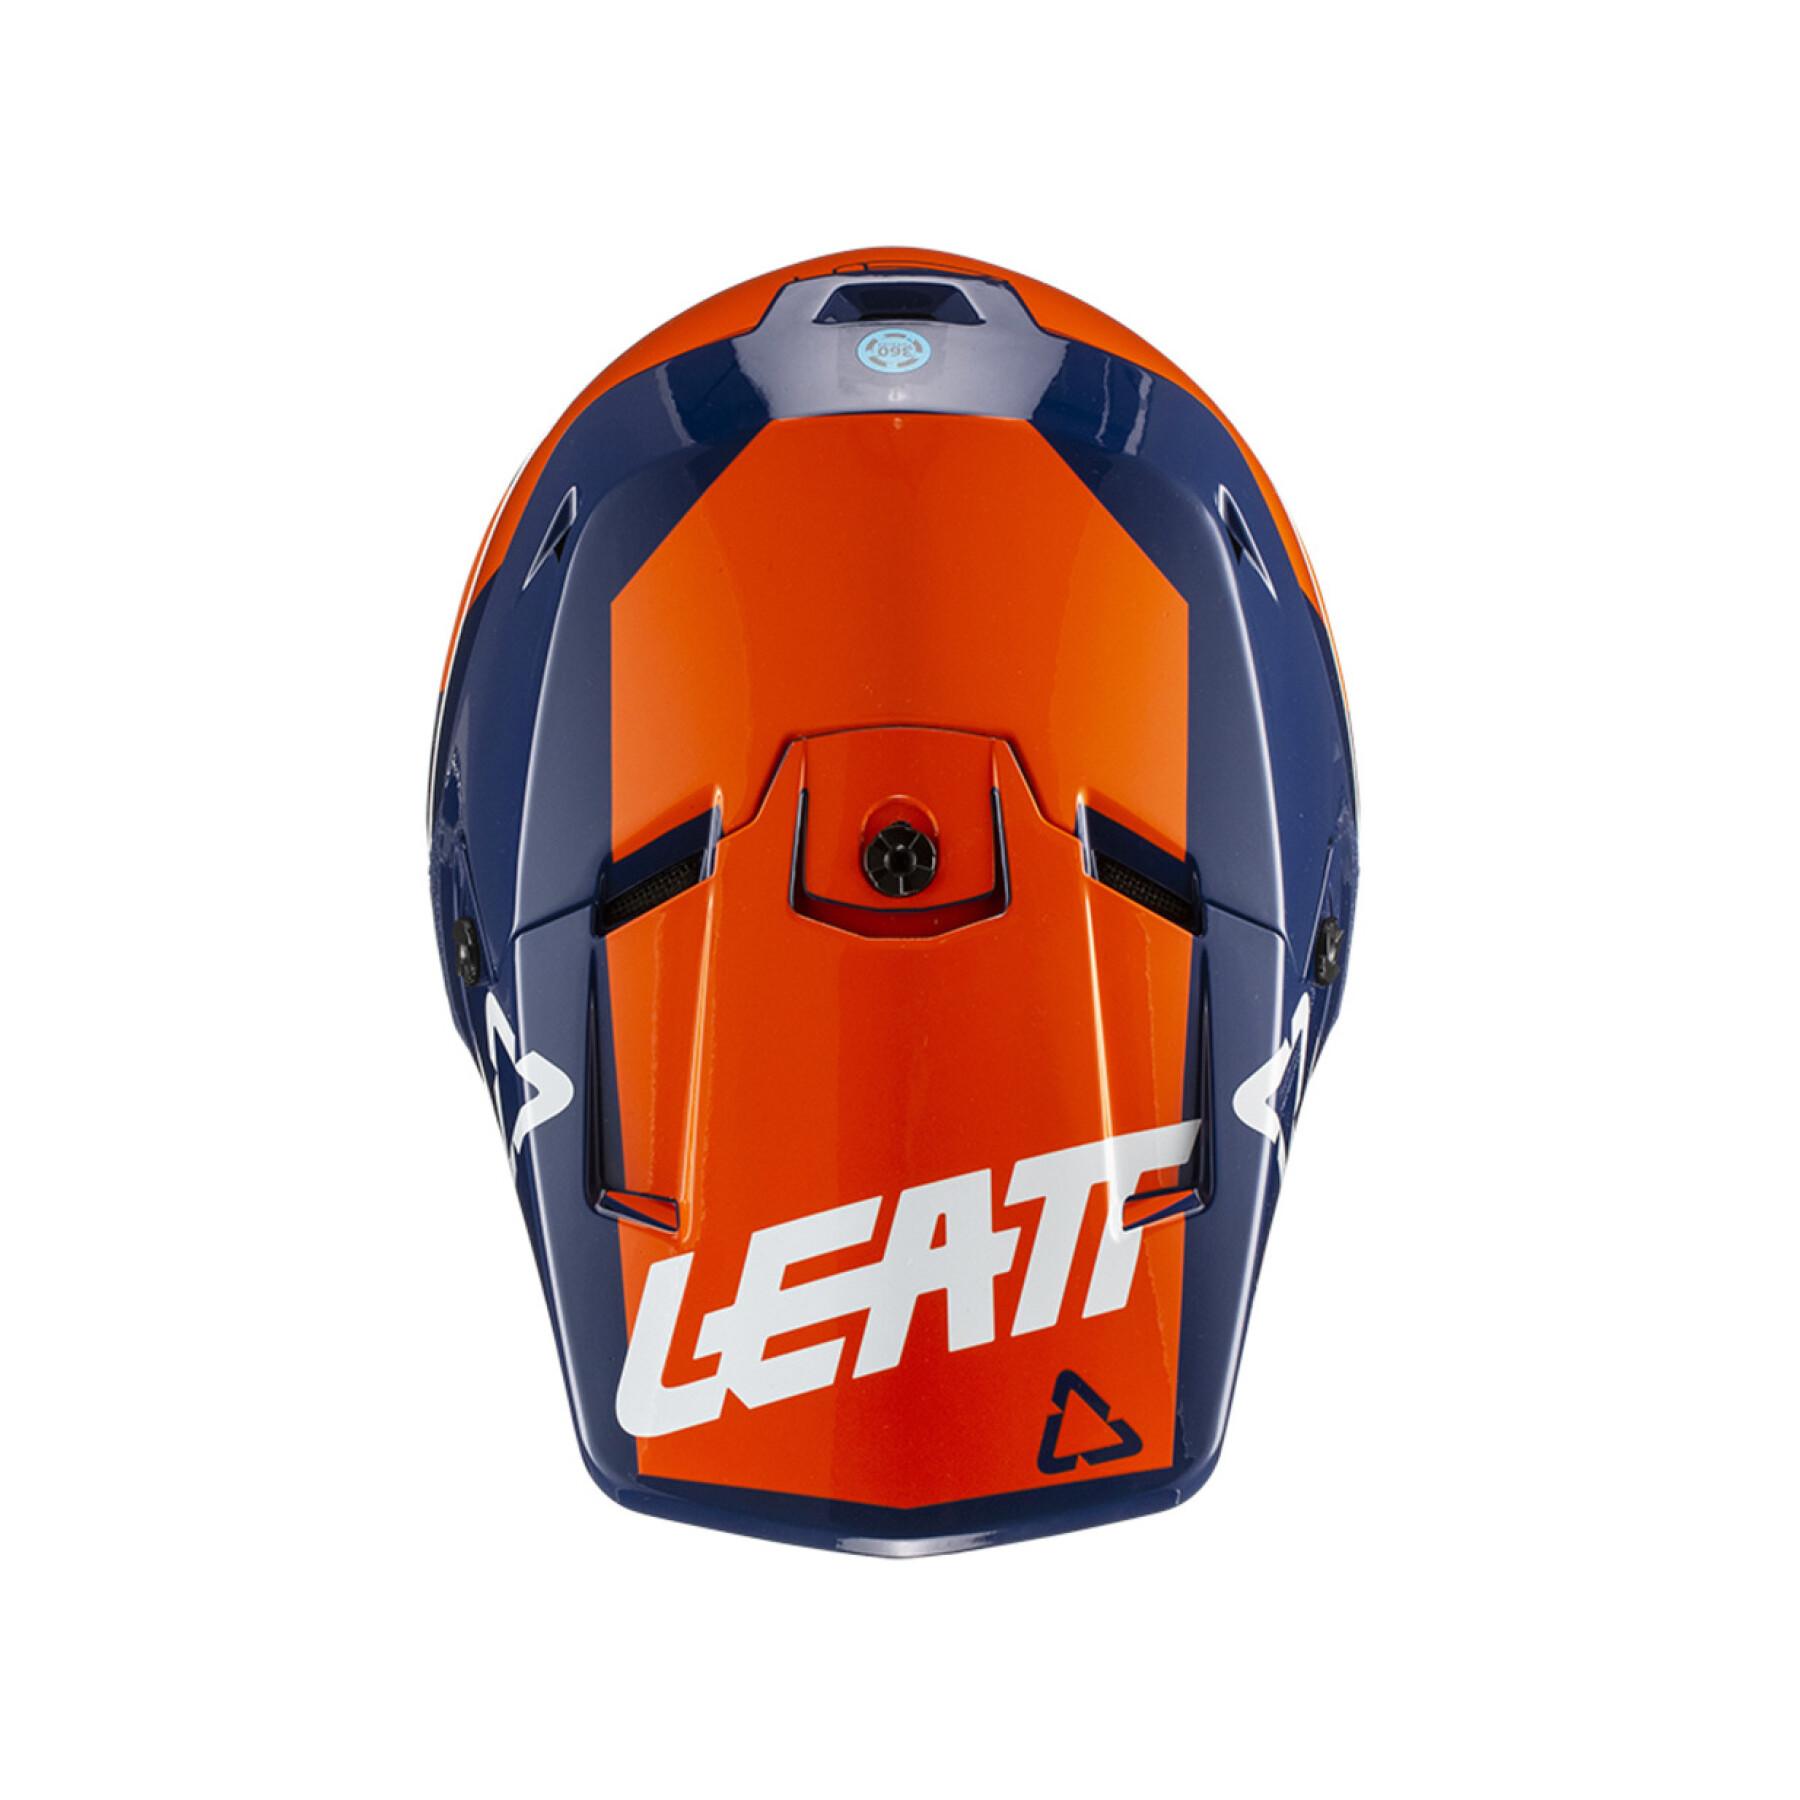 Motorcycle helmet Leatt GPX 3.5